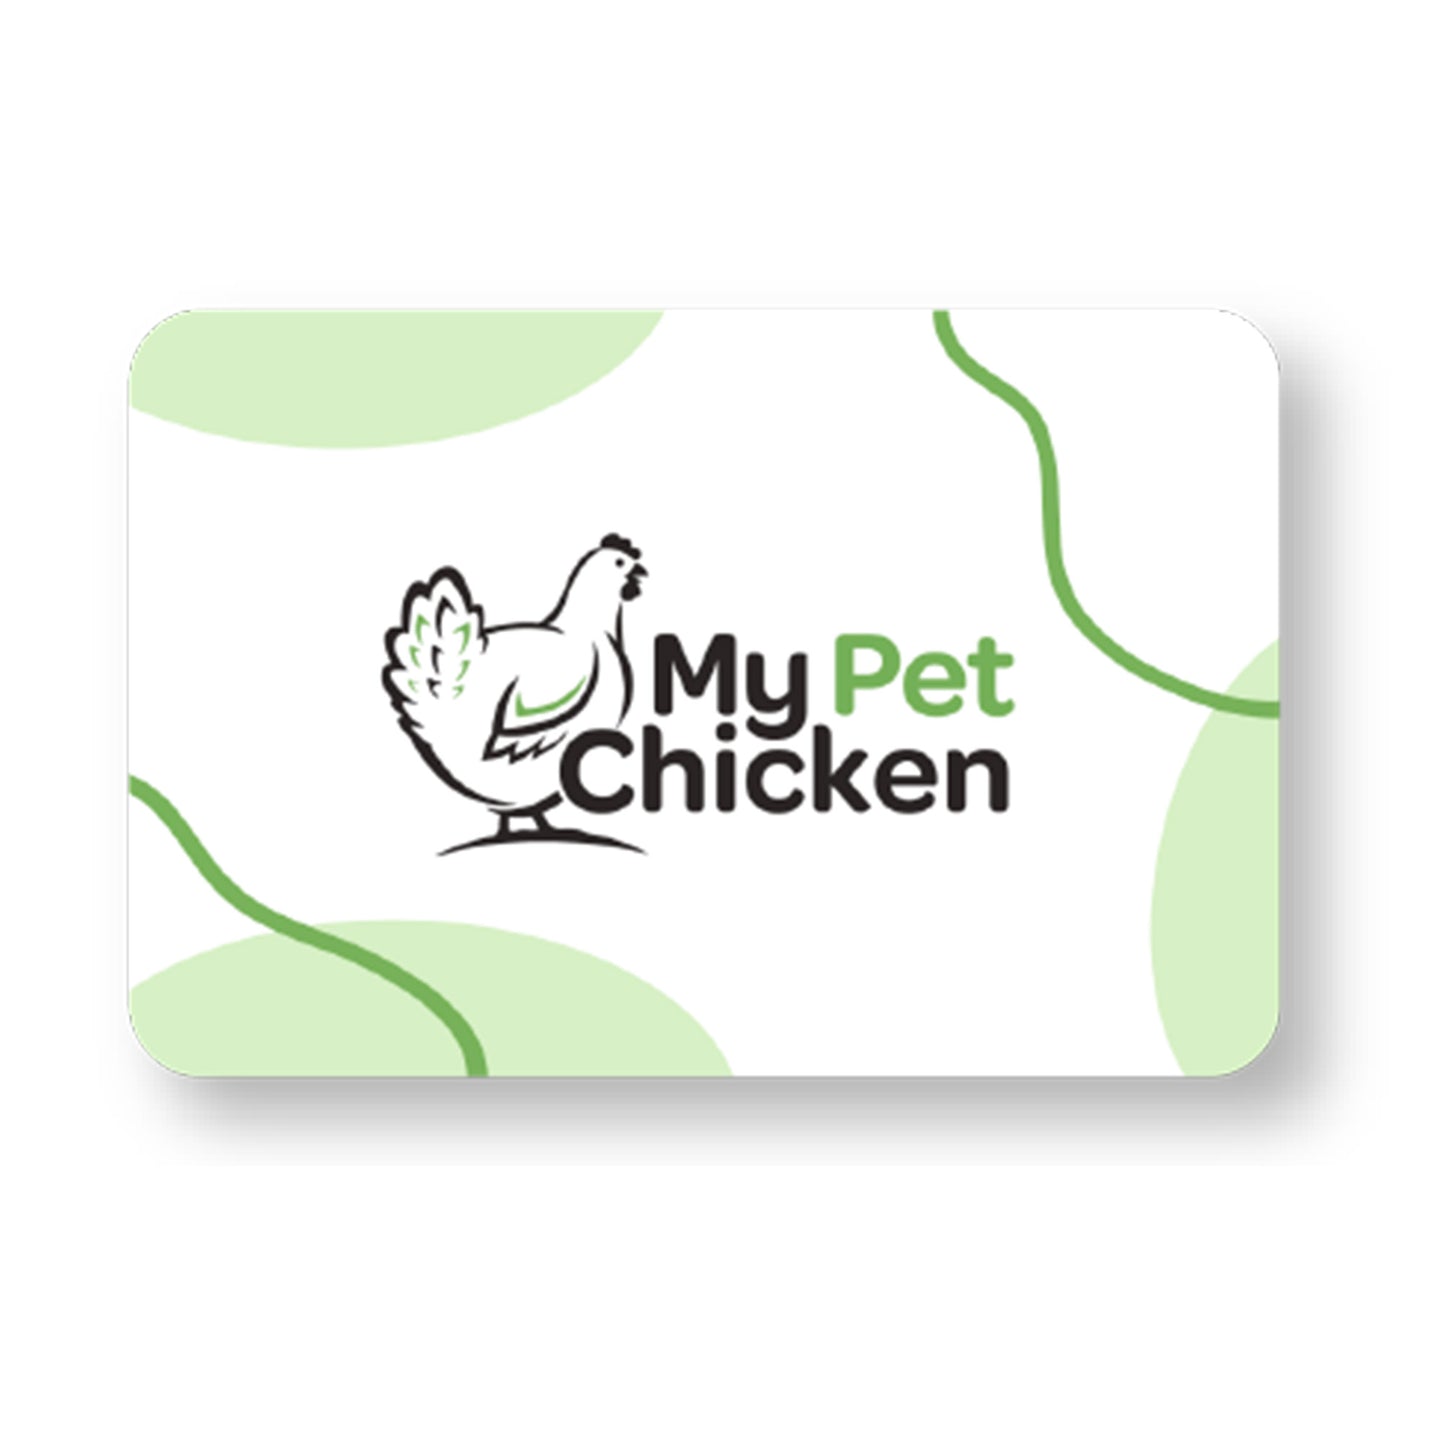 My Pet Chicken eGiftcard